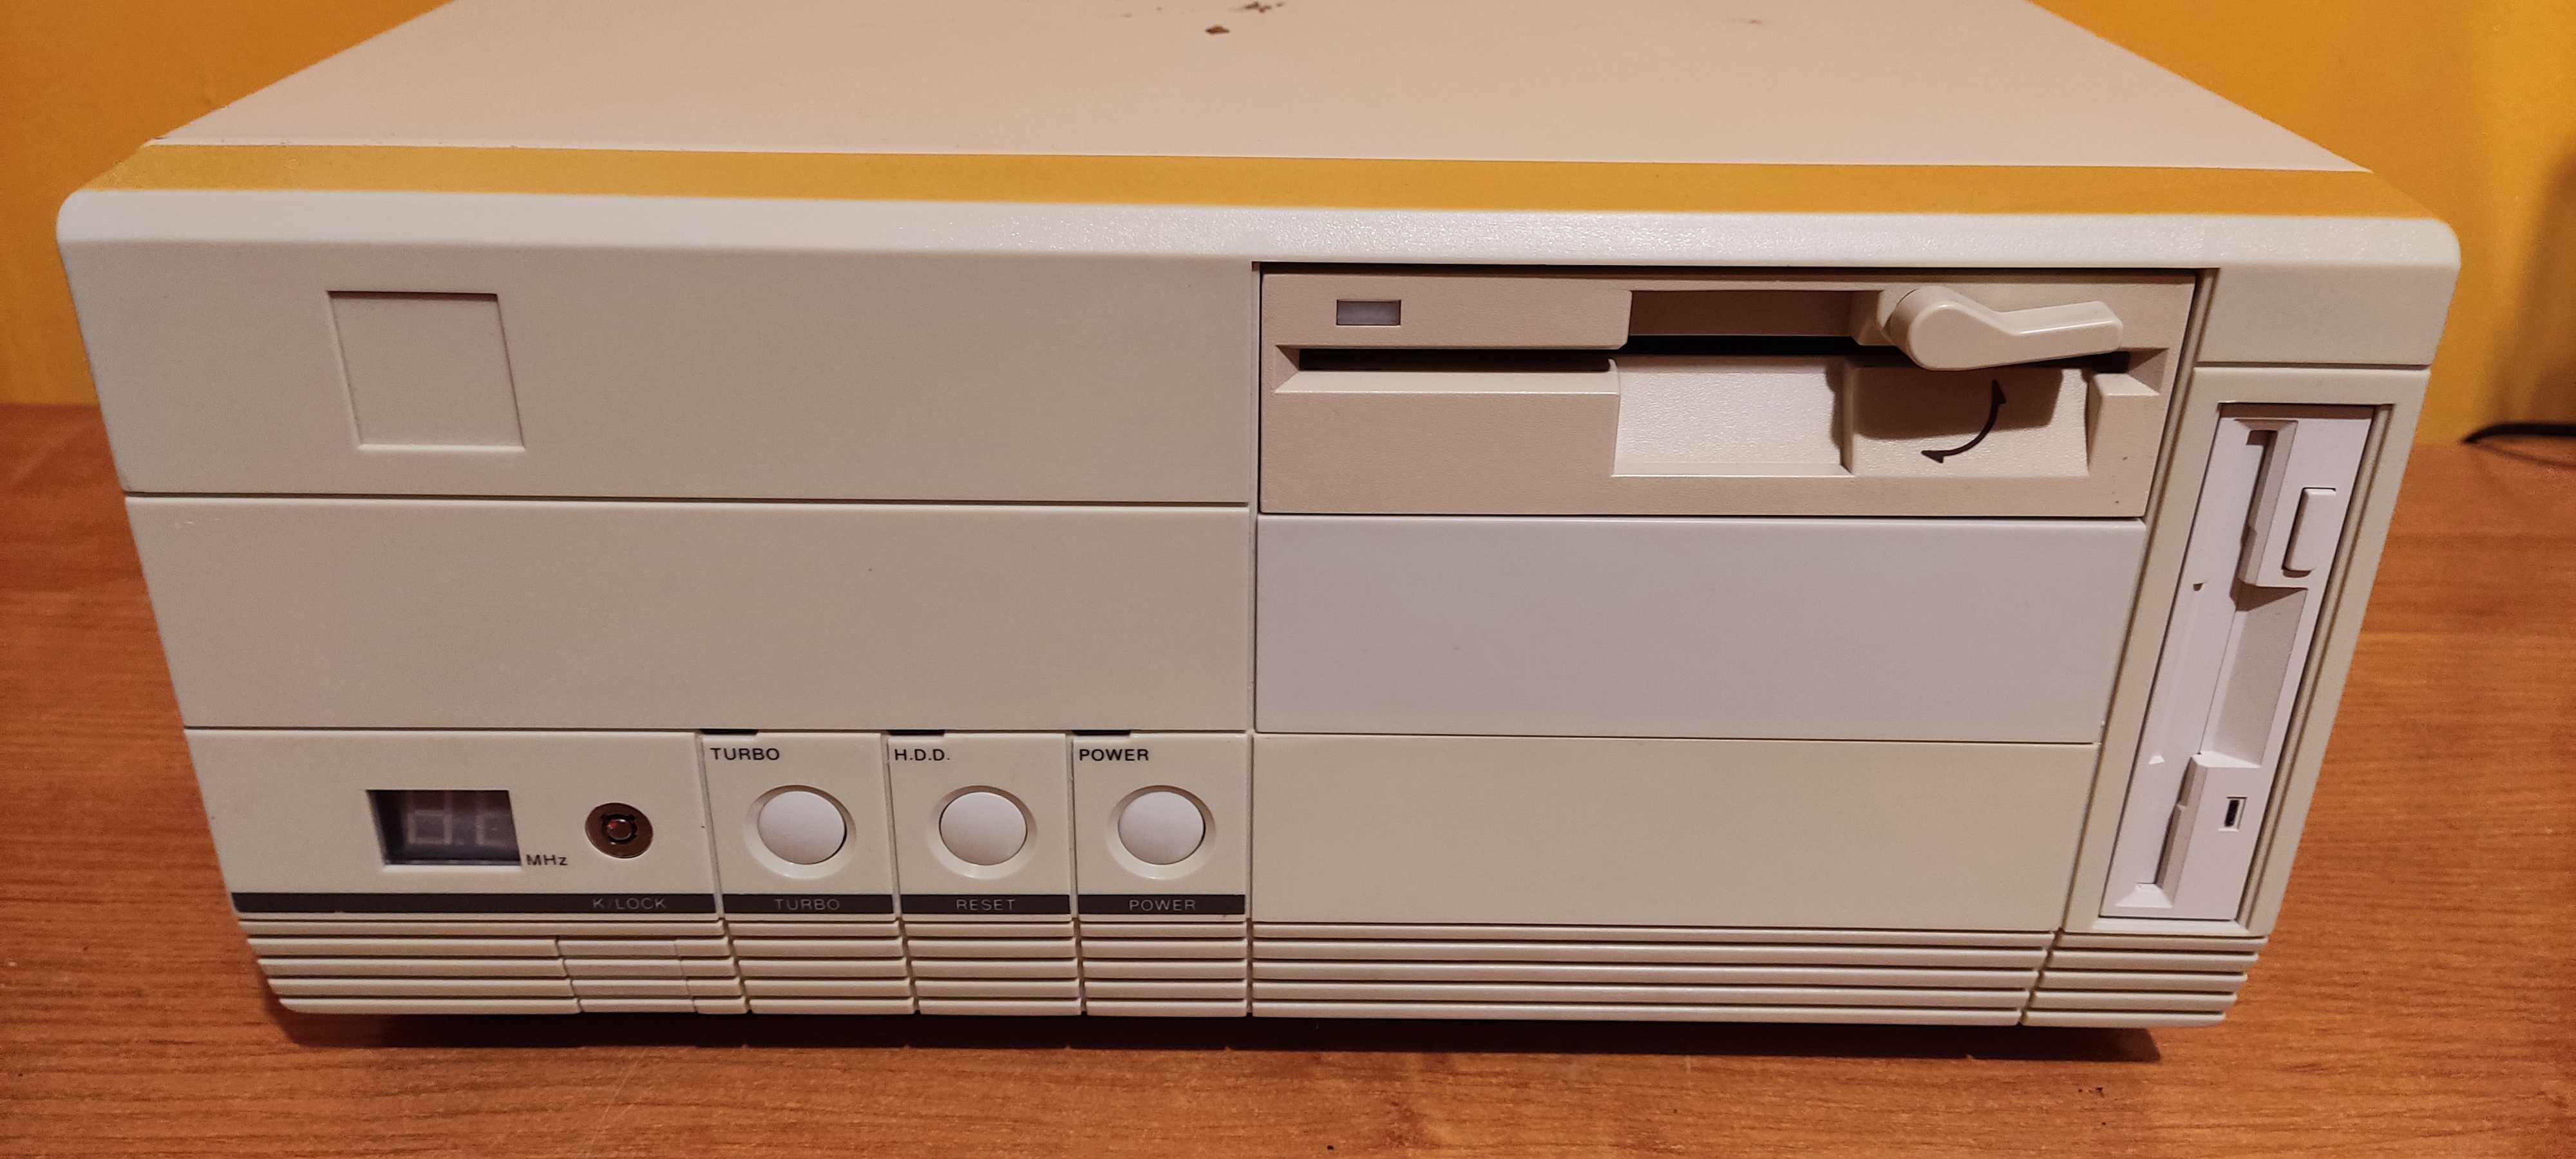 Stary komputer 286